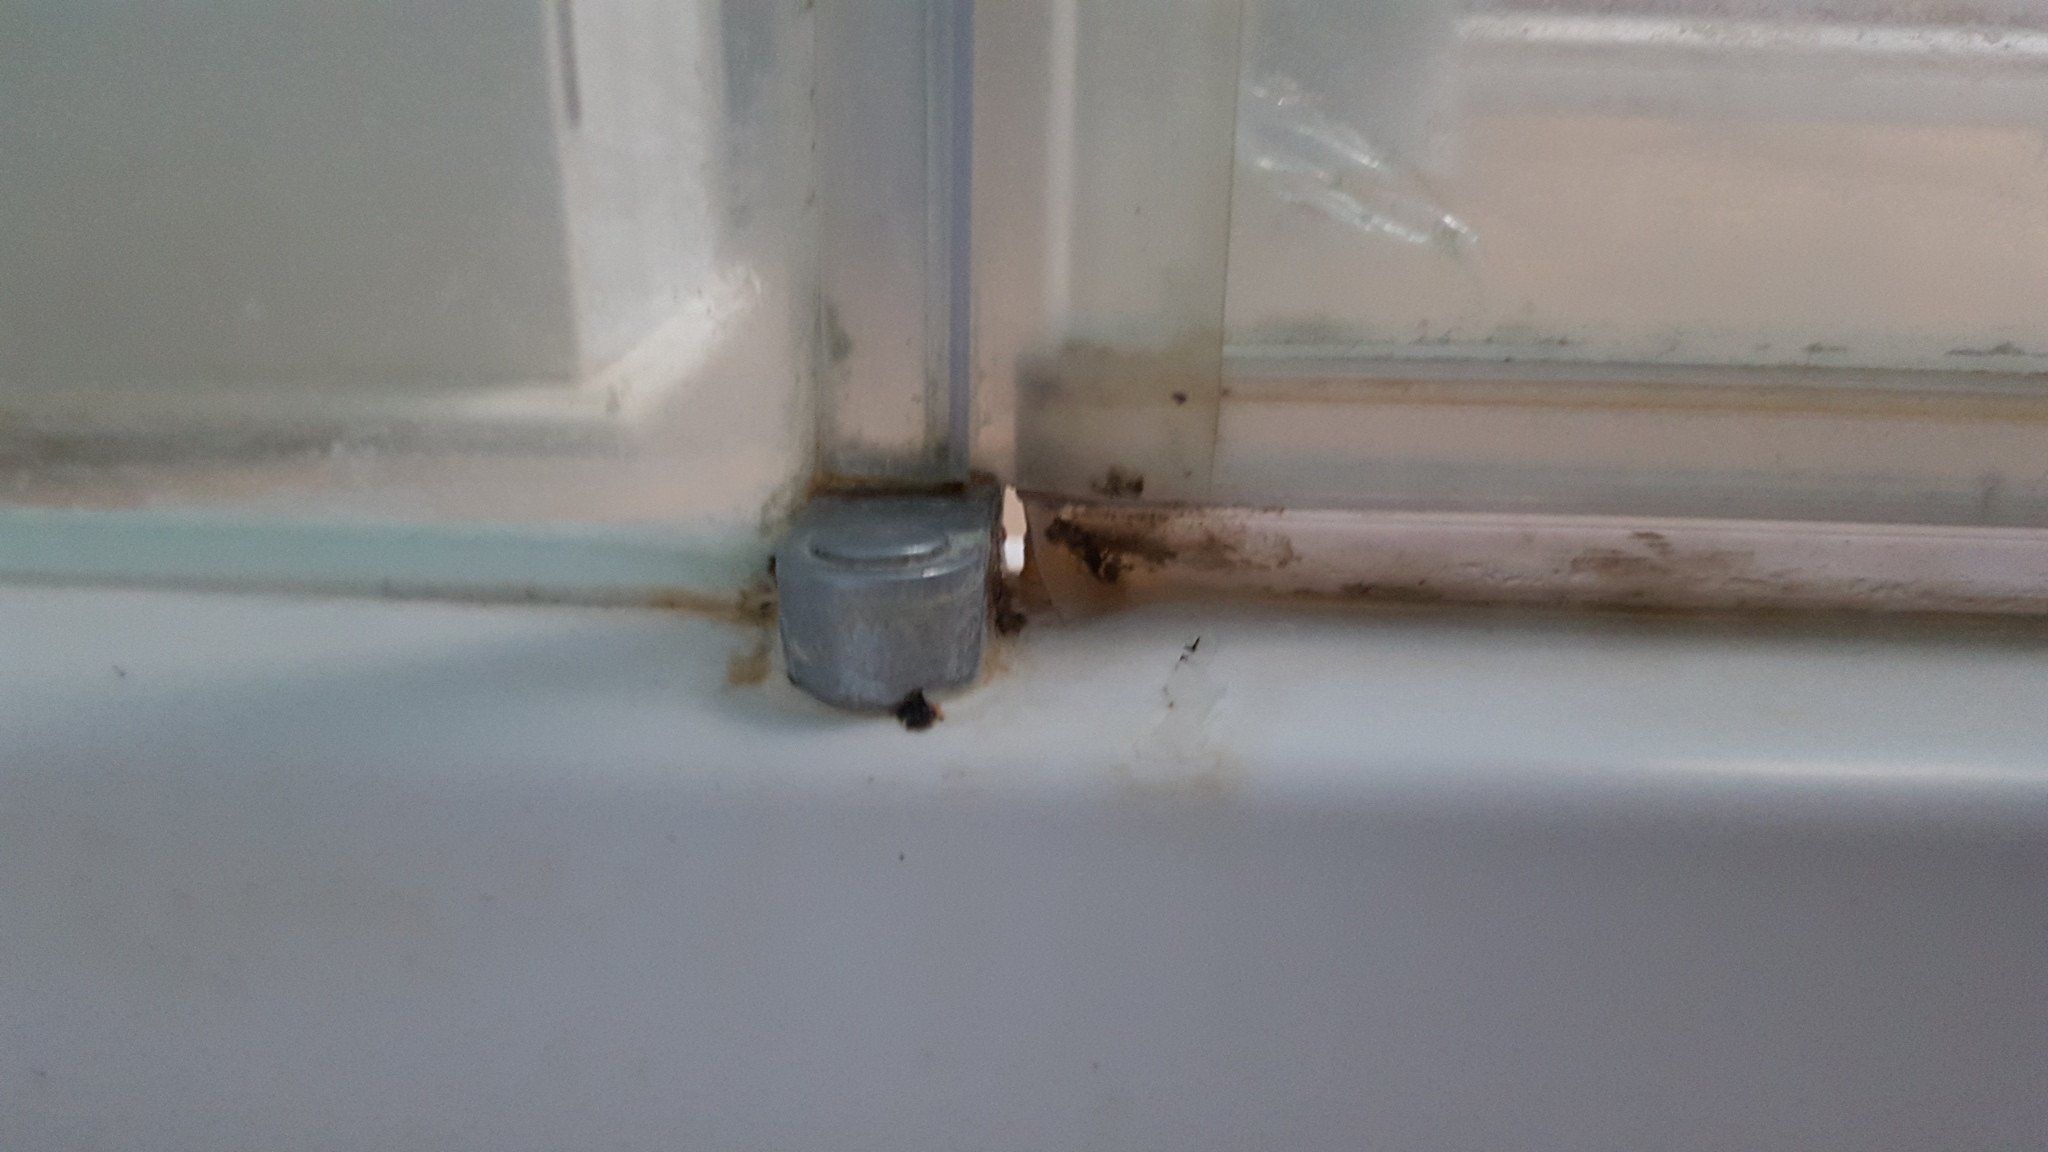 Shower gasket bottom of door opening